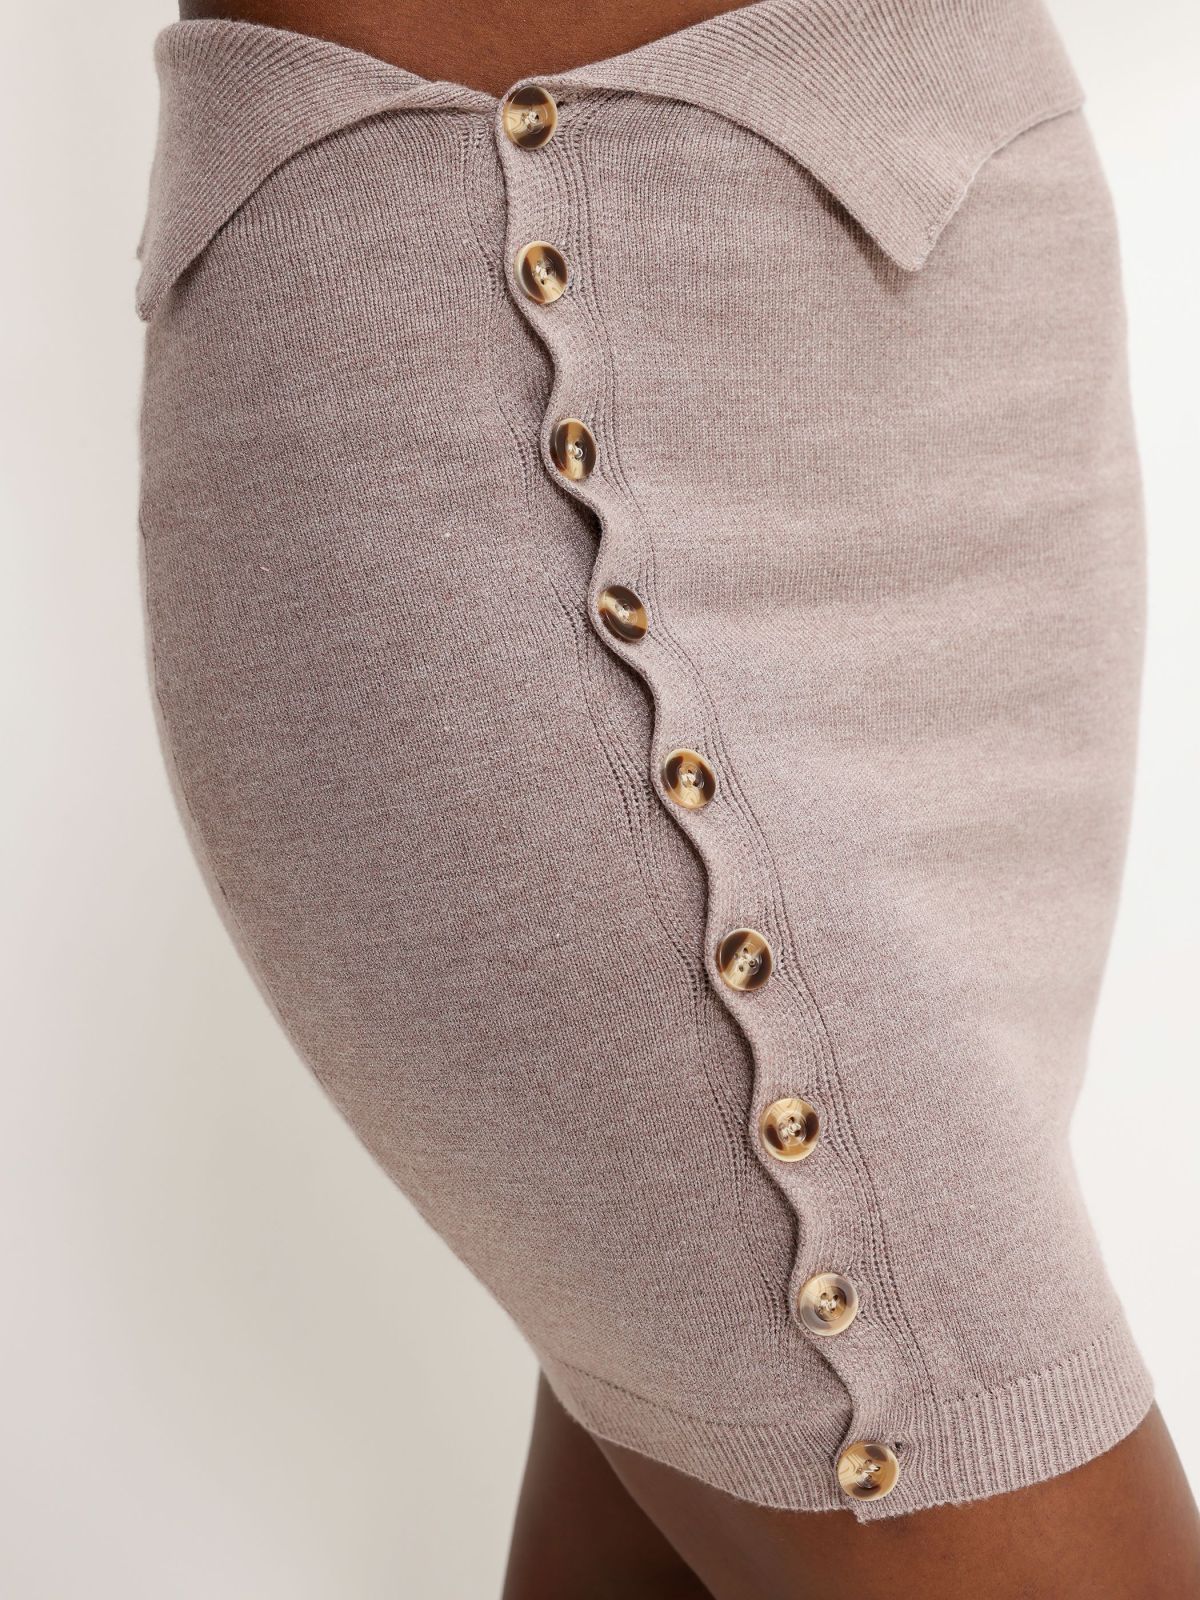  חצאית מיני סריג עם כפתורים של TERMINAL X